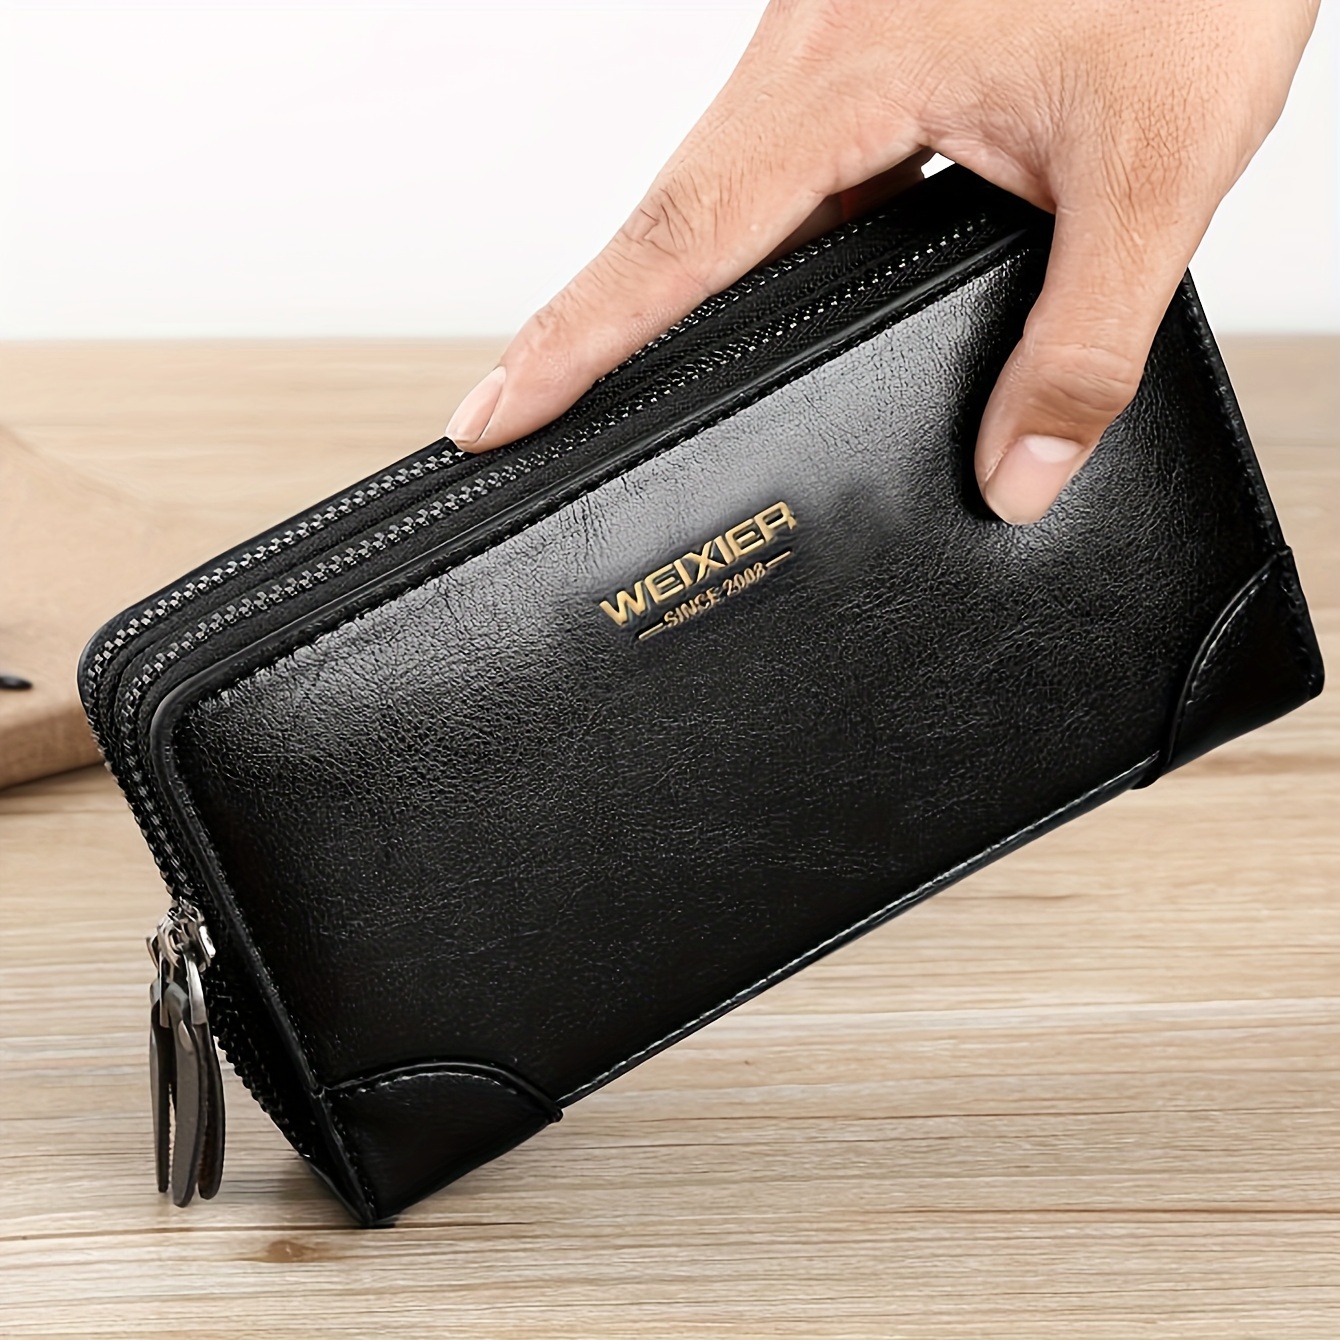 Mens Long Wallet Leather Zipper Large Phone Holder Bag Business Clutch  Handbag 